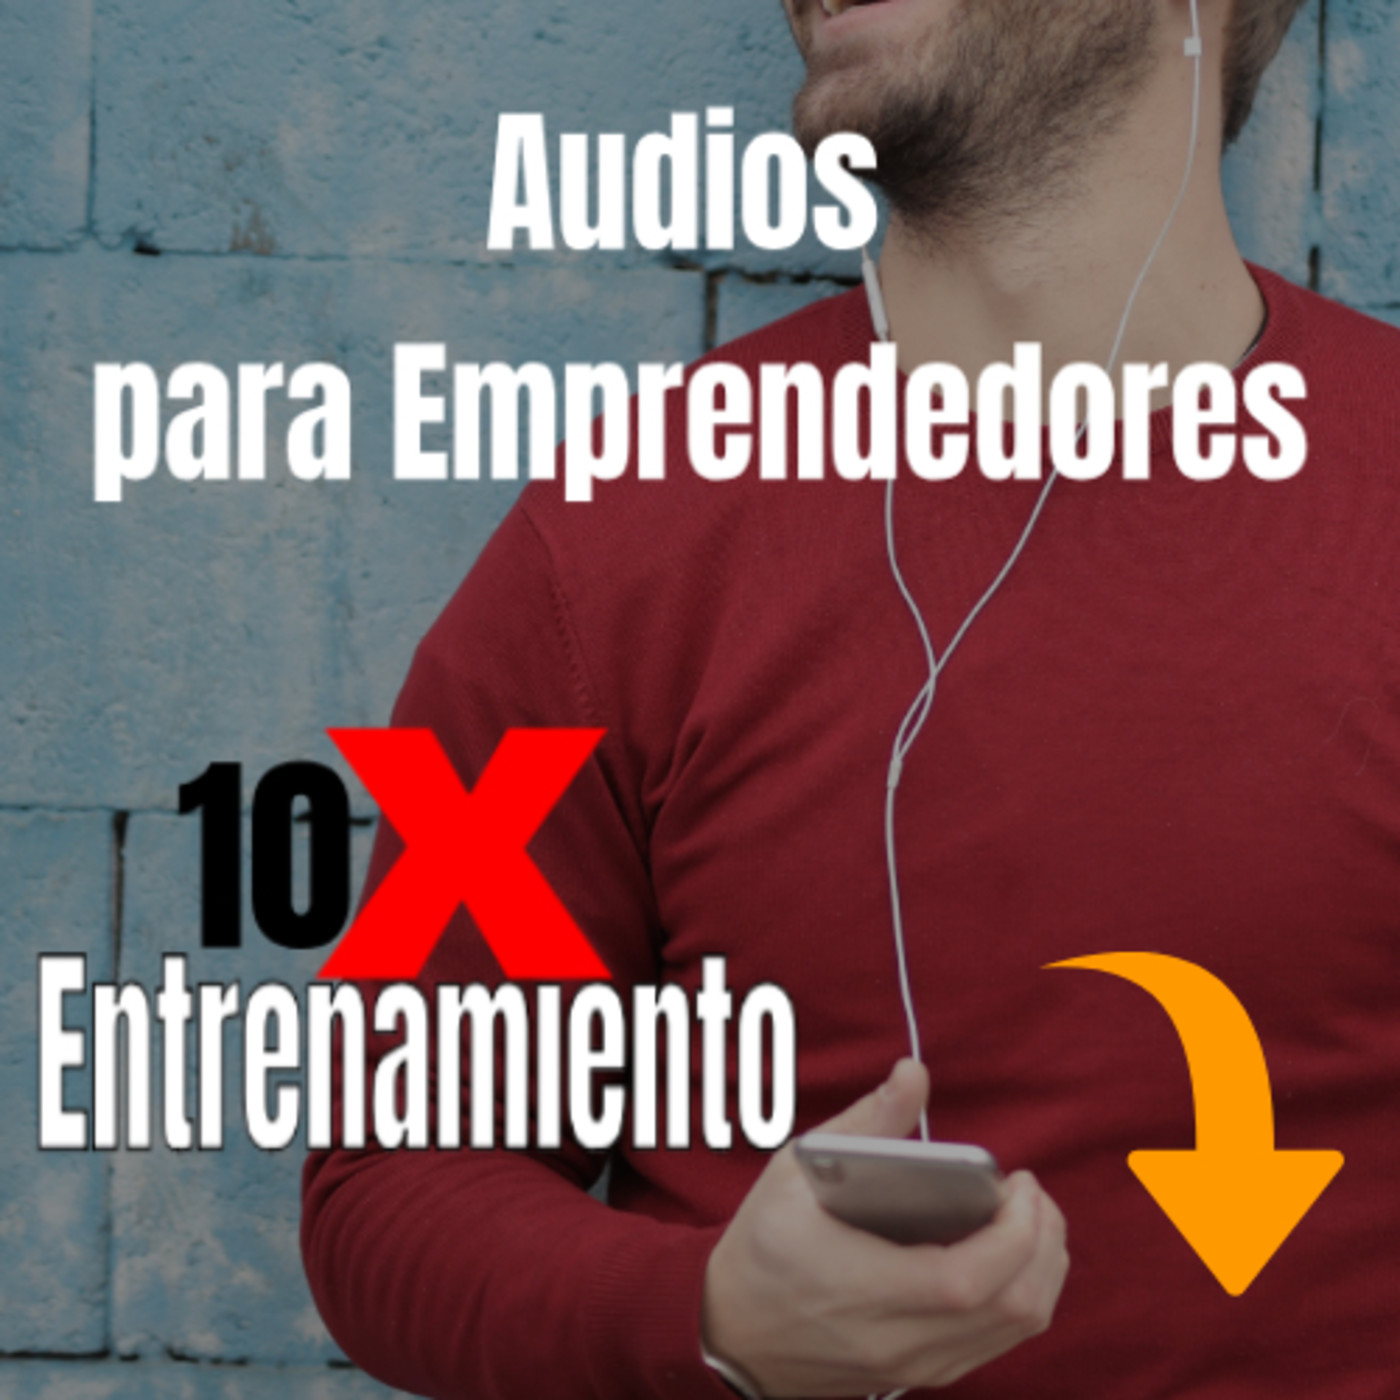 Audios para Emprendedores 10X